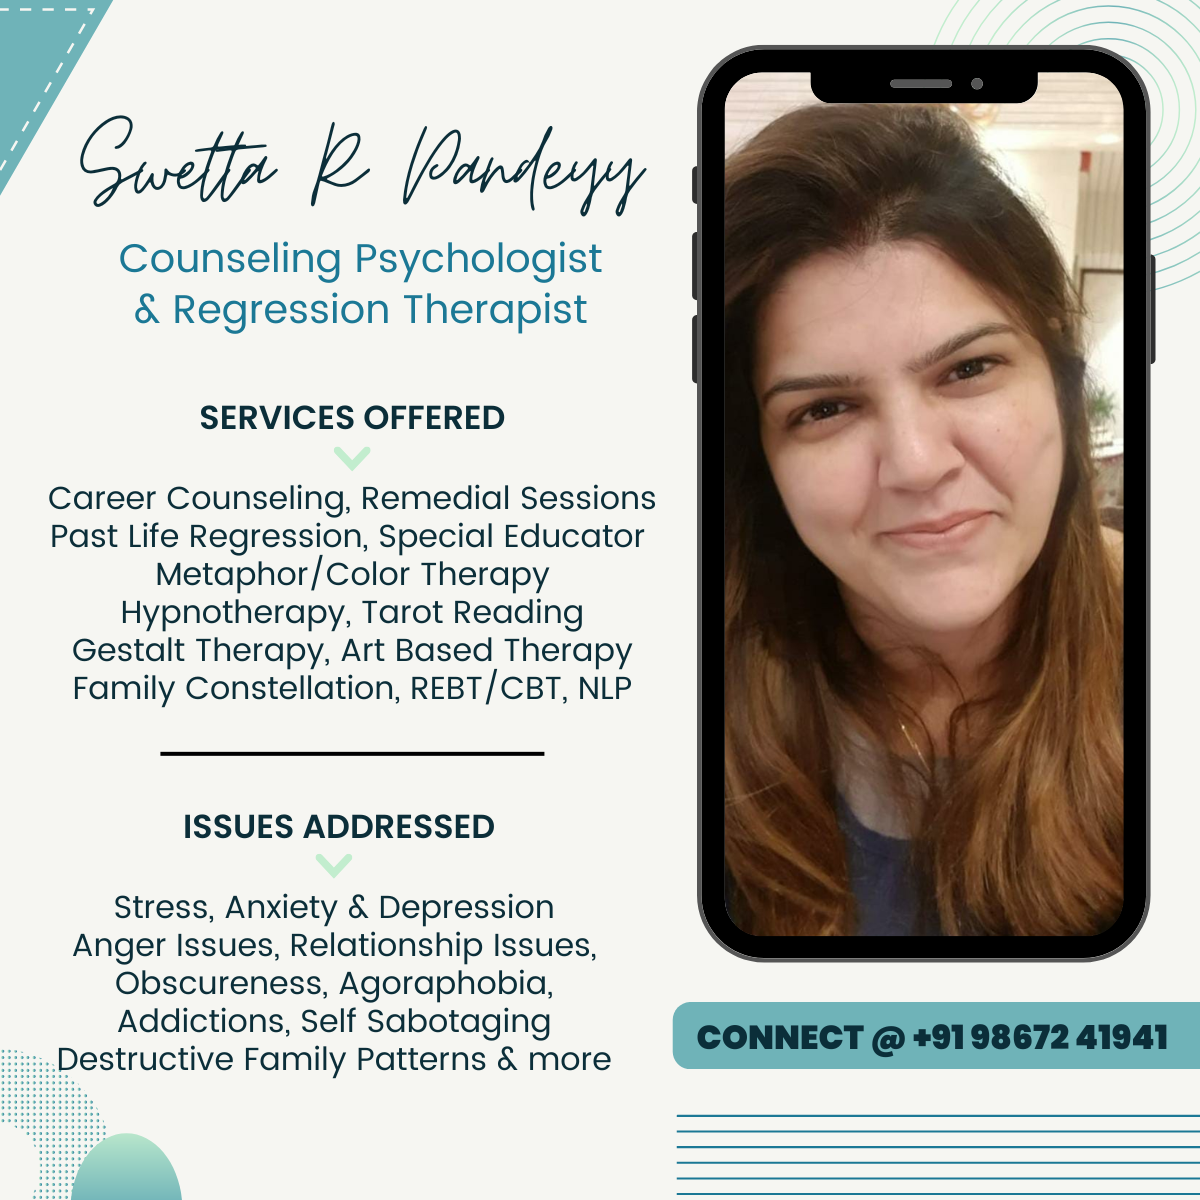 Sweta R Pandey - Counselling Psychologist & Regression Therapist- Juhu